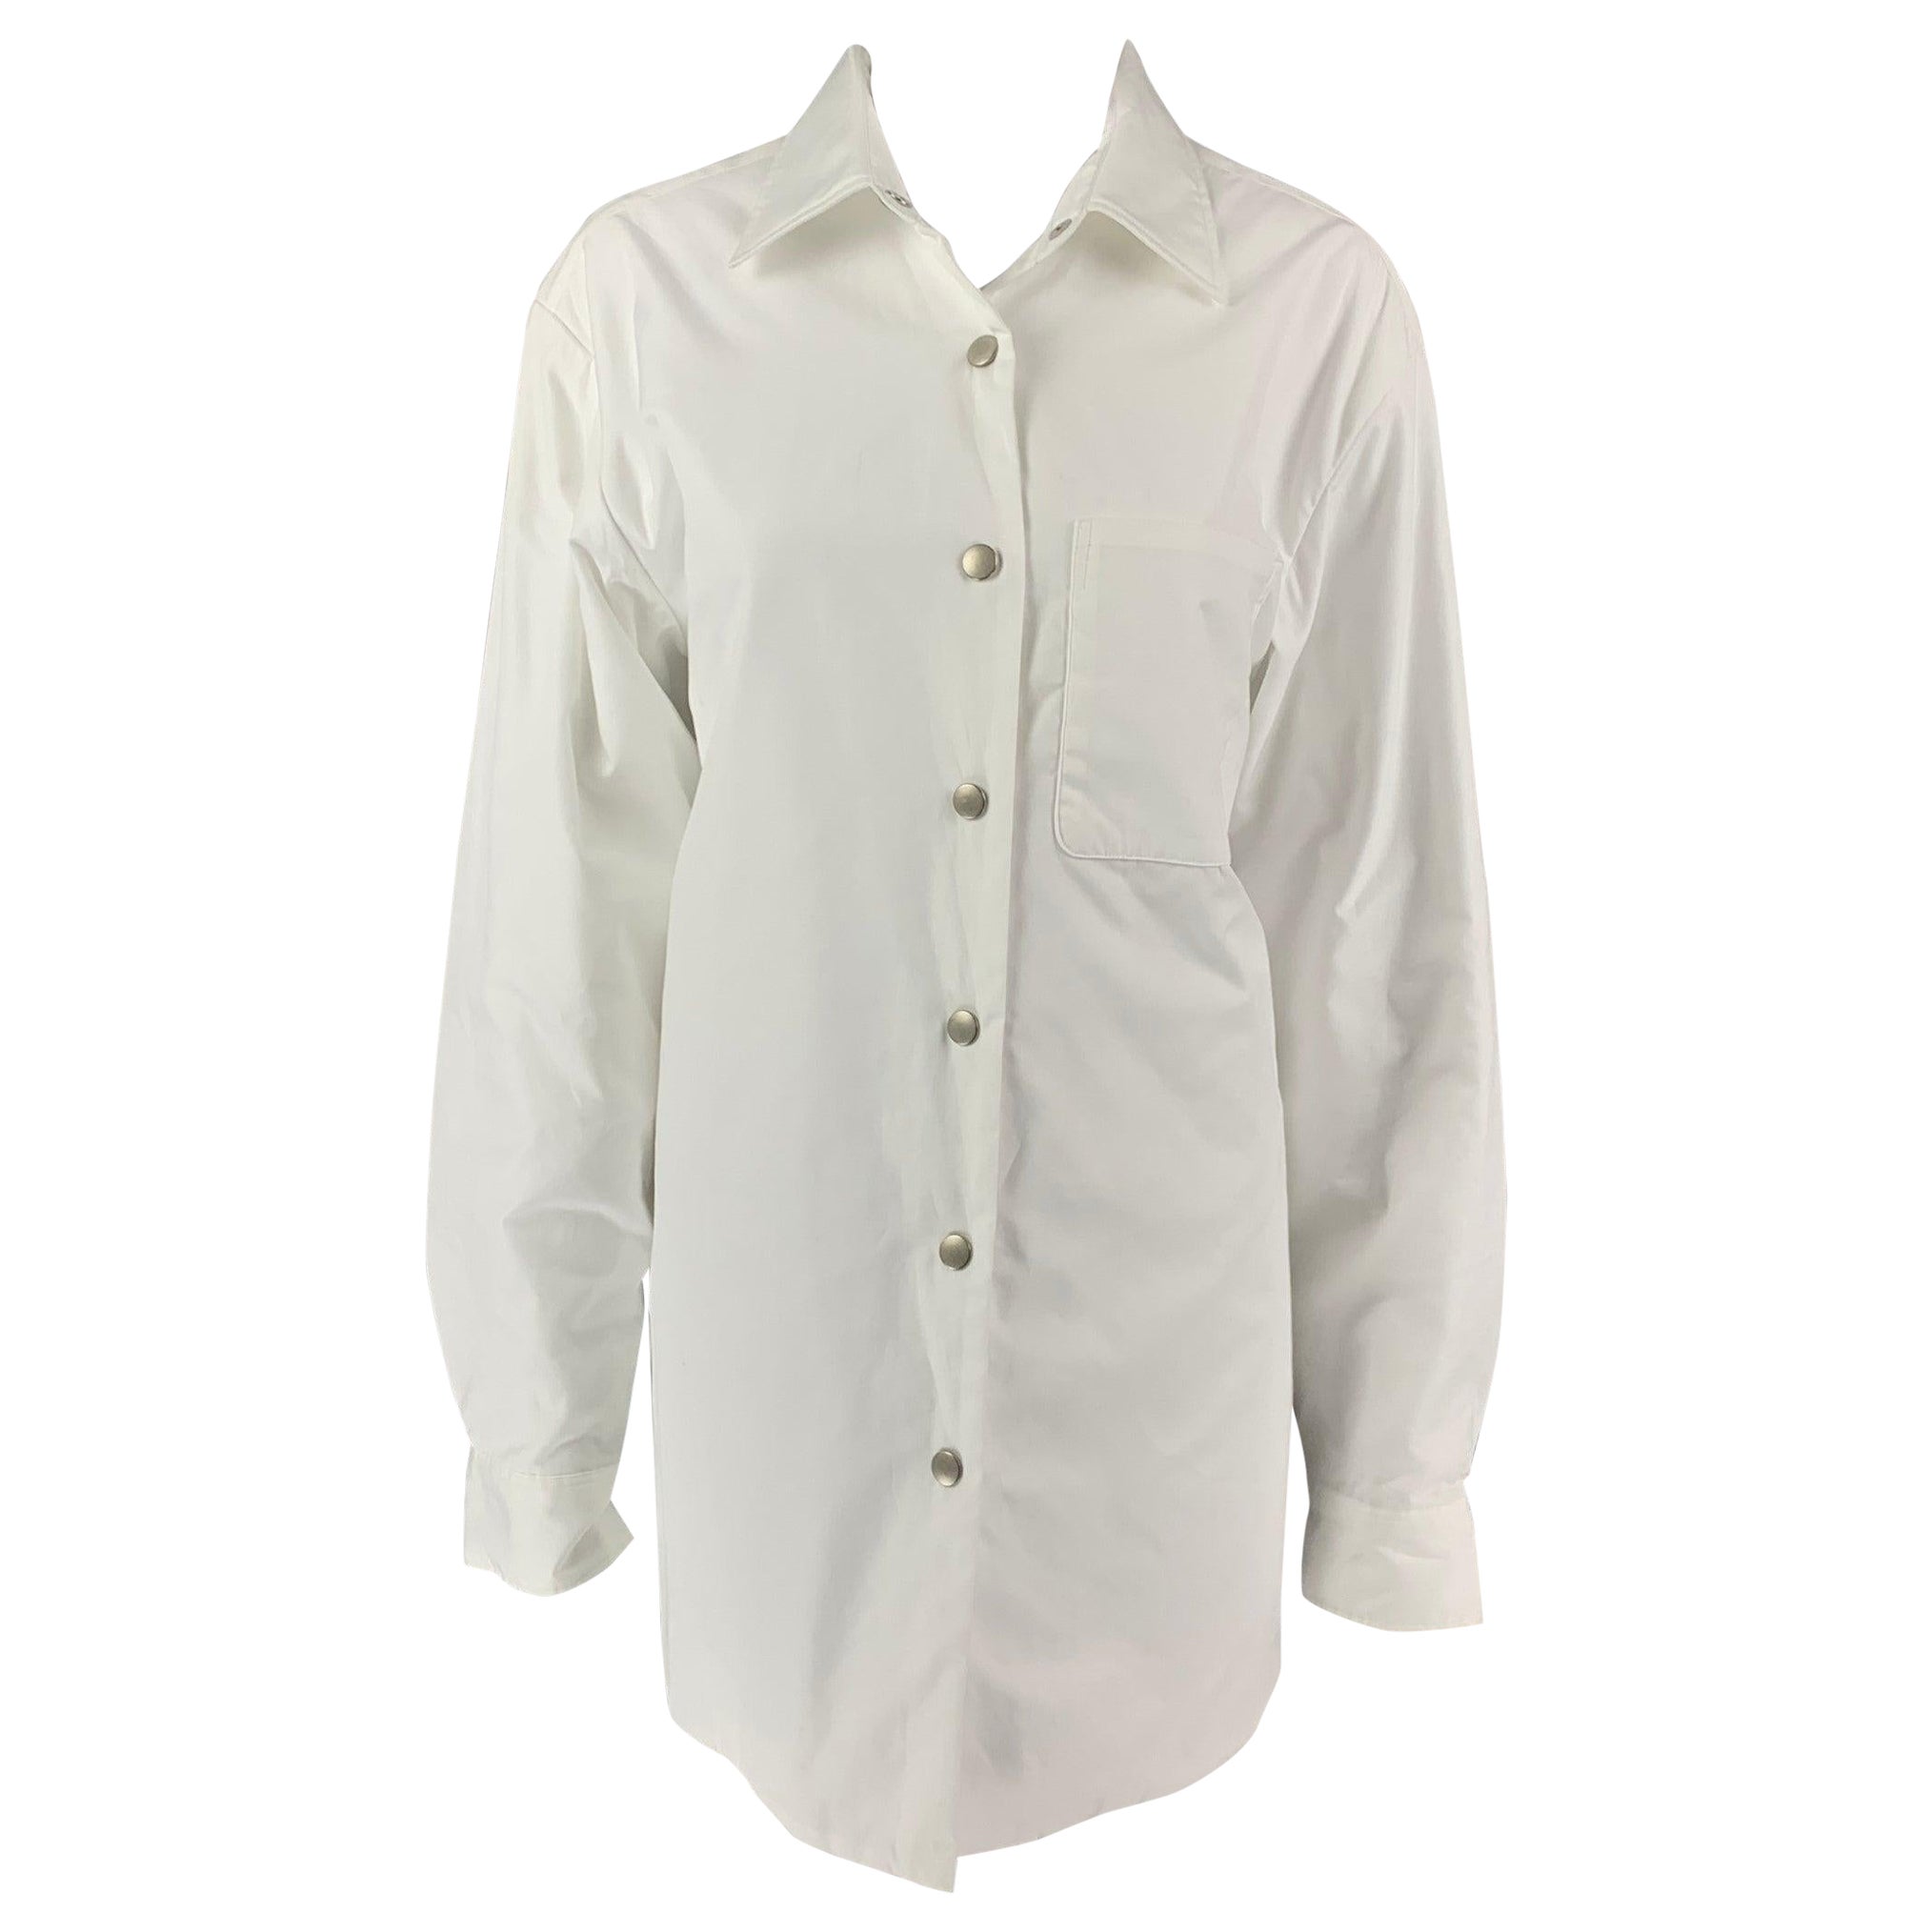 DRIES VAN NOTEN x LEN LYE Size M White Cotton Shirt Jacket Shirt For Sale